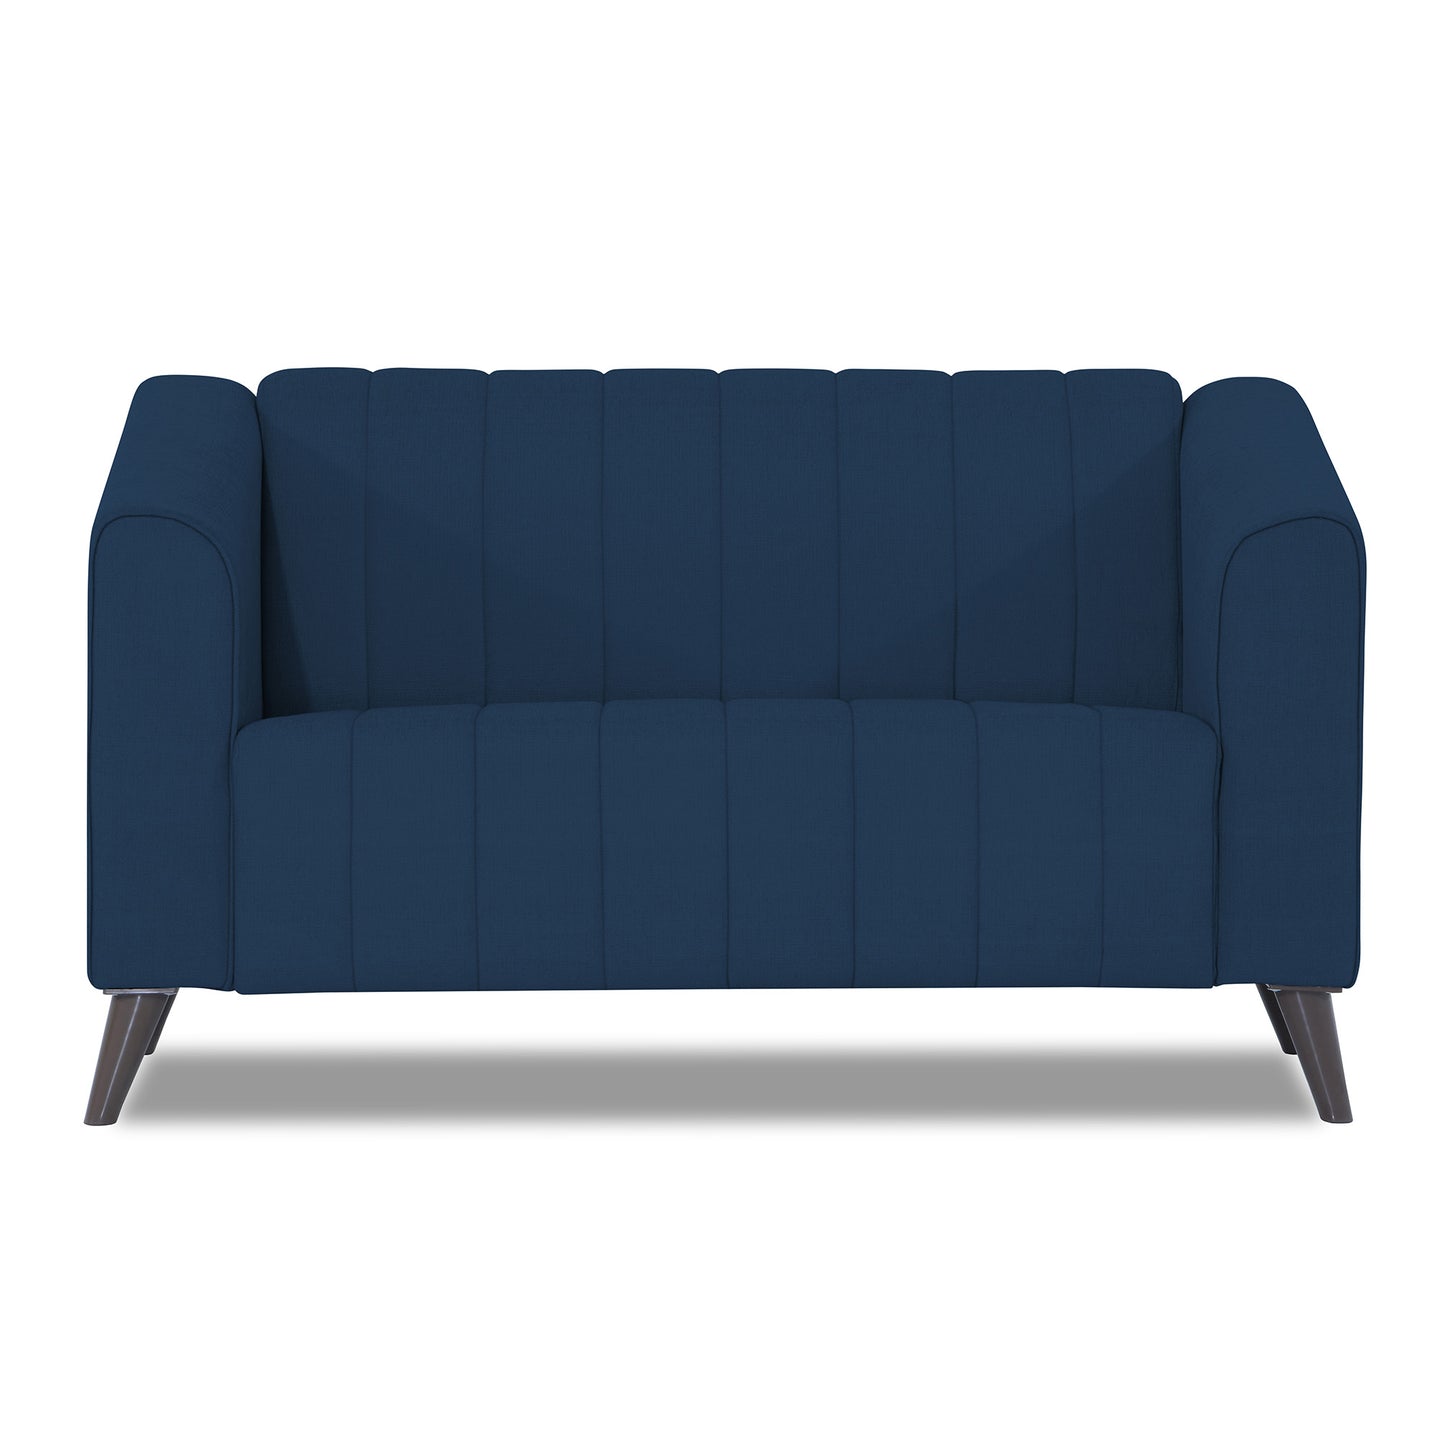 Adorn India Premium Laurel 2 Seater Sofa (Blue)